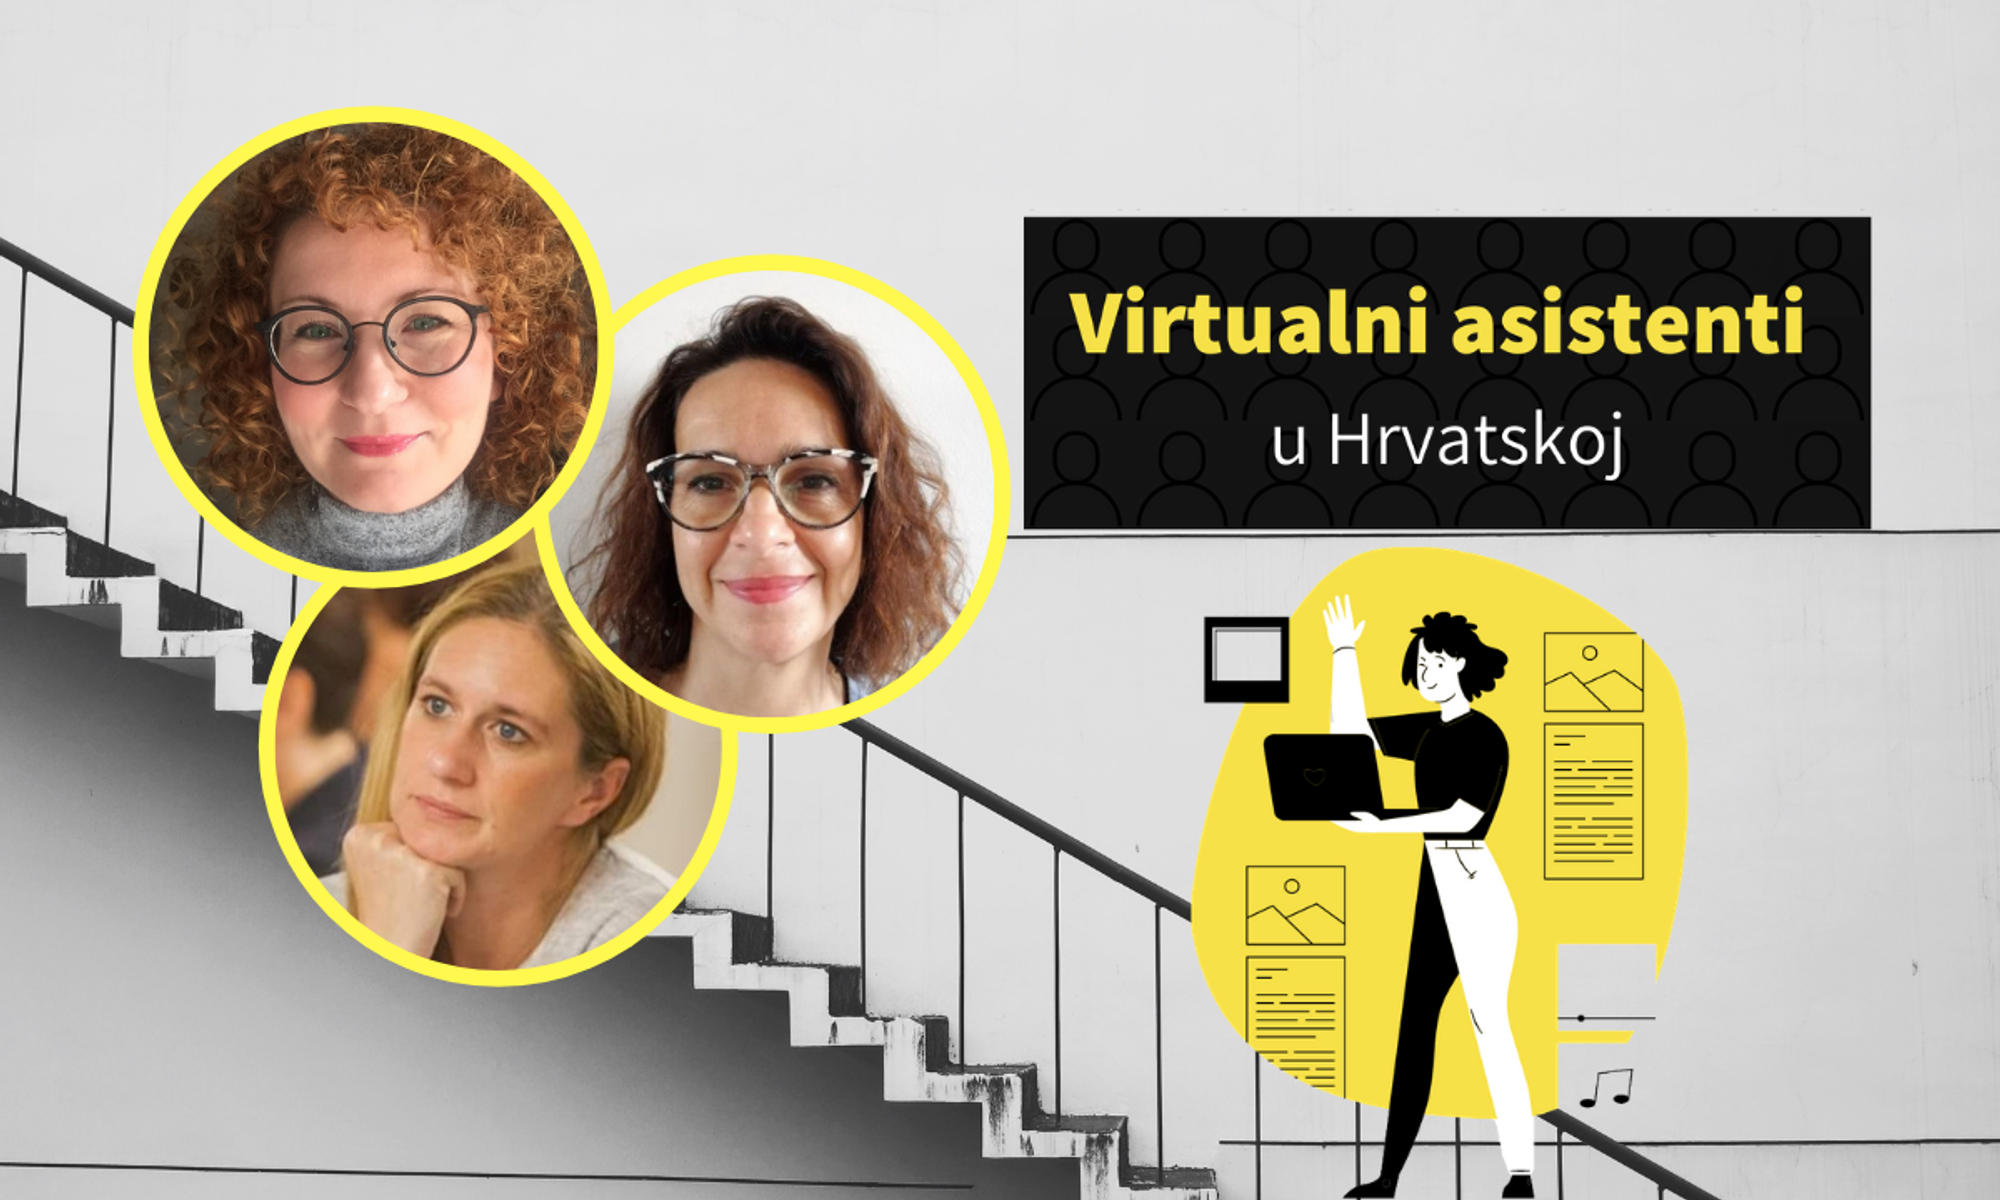 Virtualni asistenti: U Hrvatskoj ih ima 50-100, ali čak 40% ispitanika čulo je za njihove usluge tek ove godine